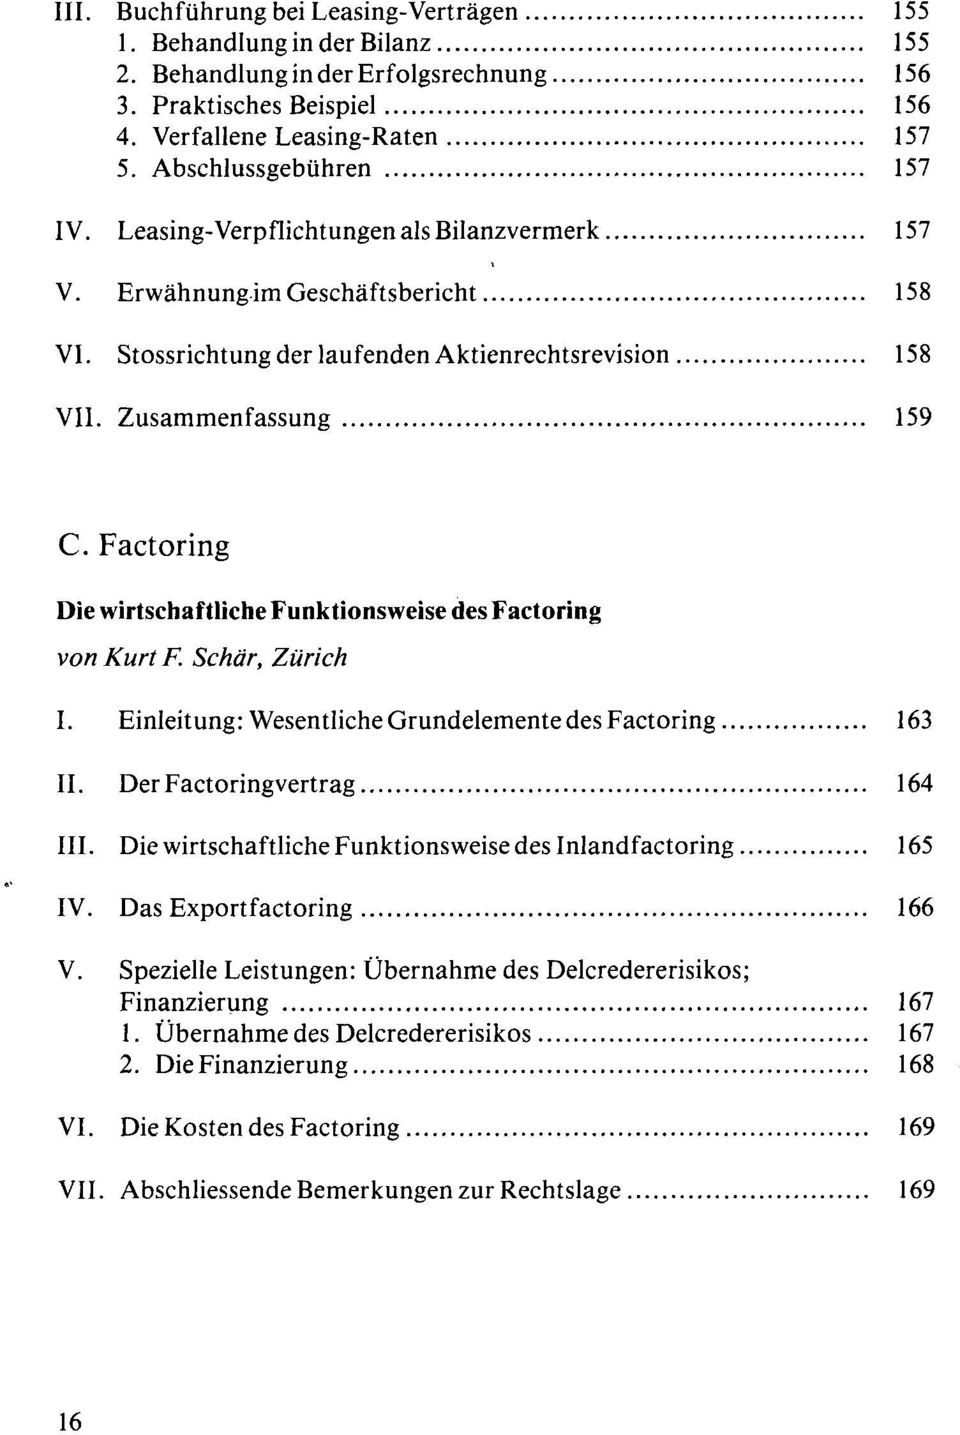 Factoring Die wirtschaftliche Funktionsweise des Factoring von Kurt F. Schär, Zürich I. Einleitung: Wesentliche Grundelemente des Factoring 163 II. Der Factoringvertrag 164 III.